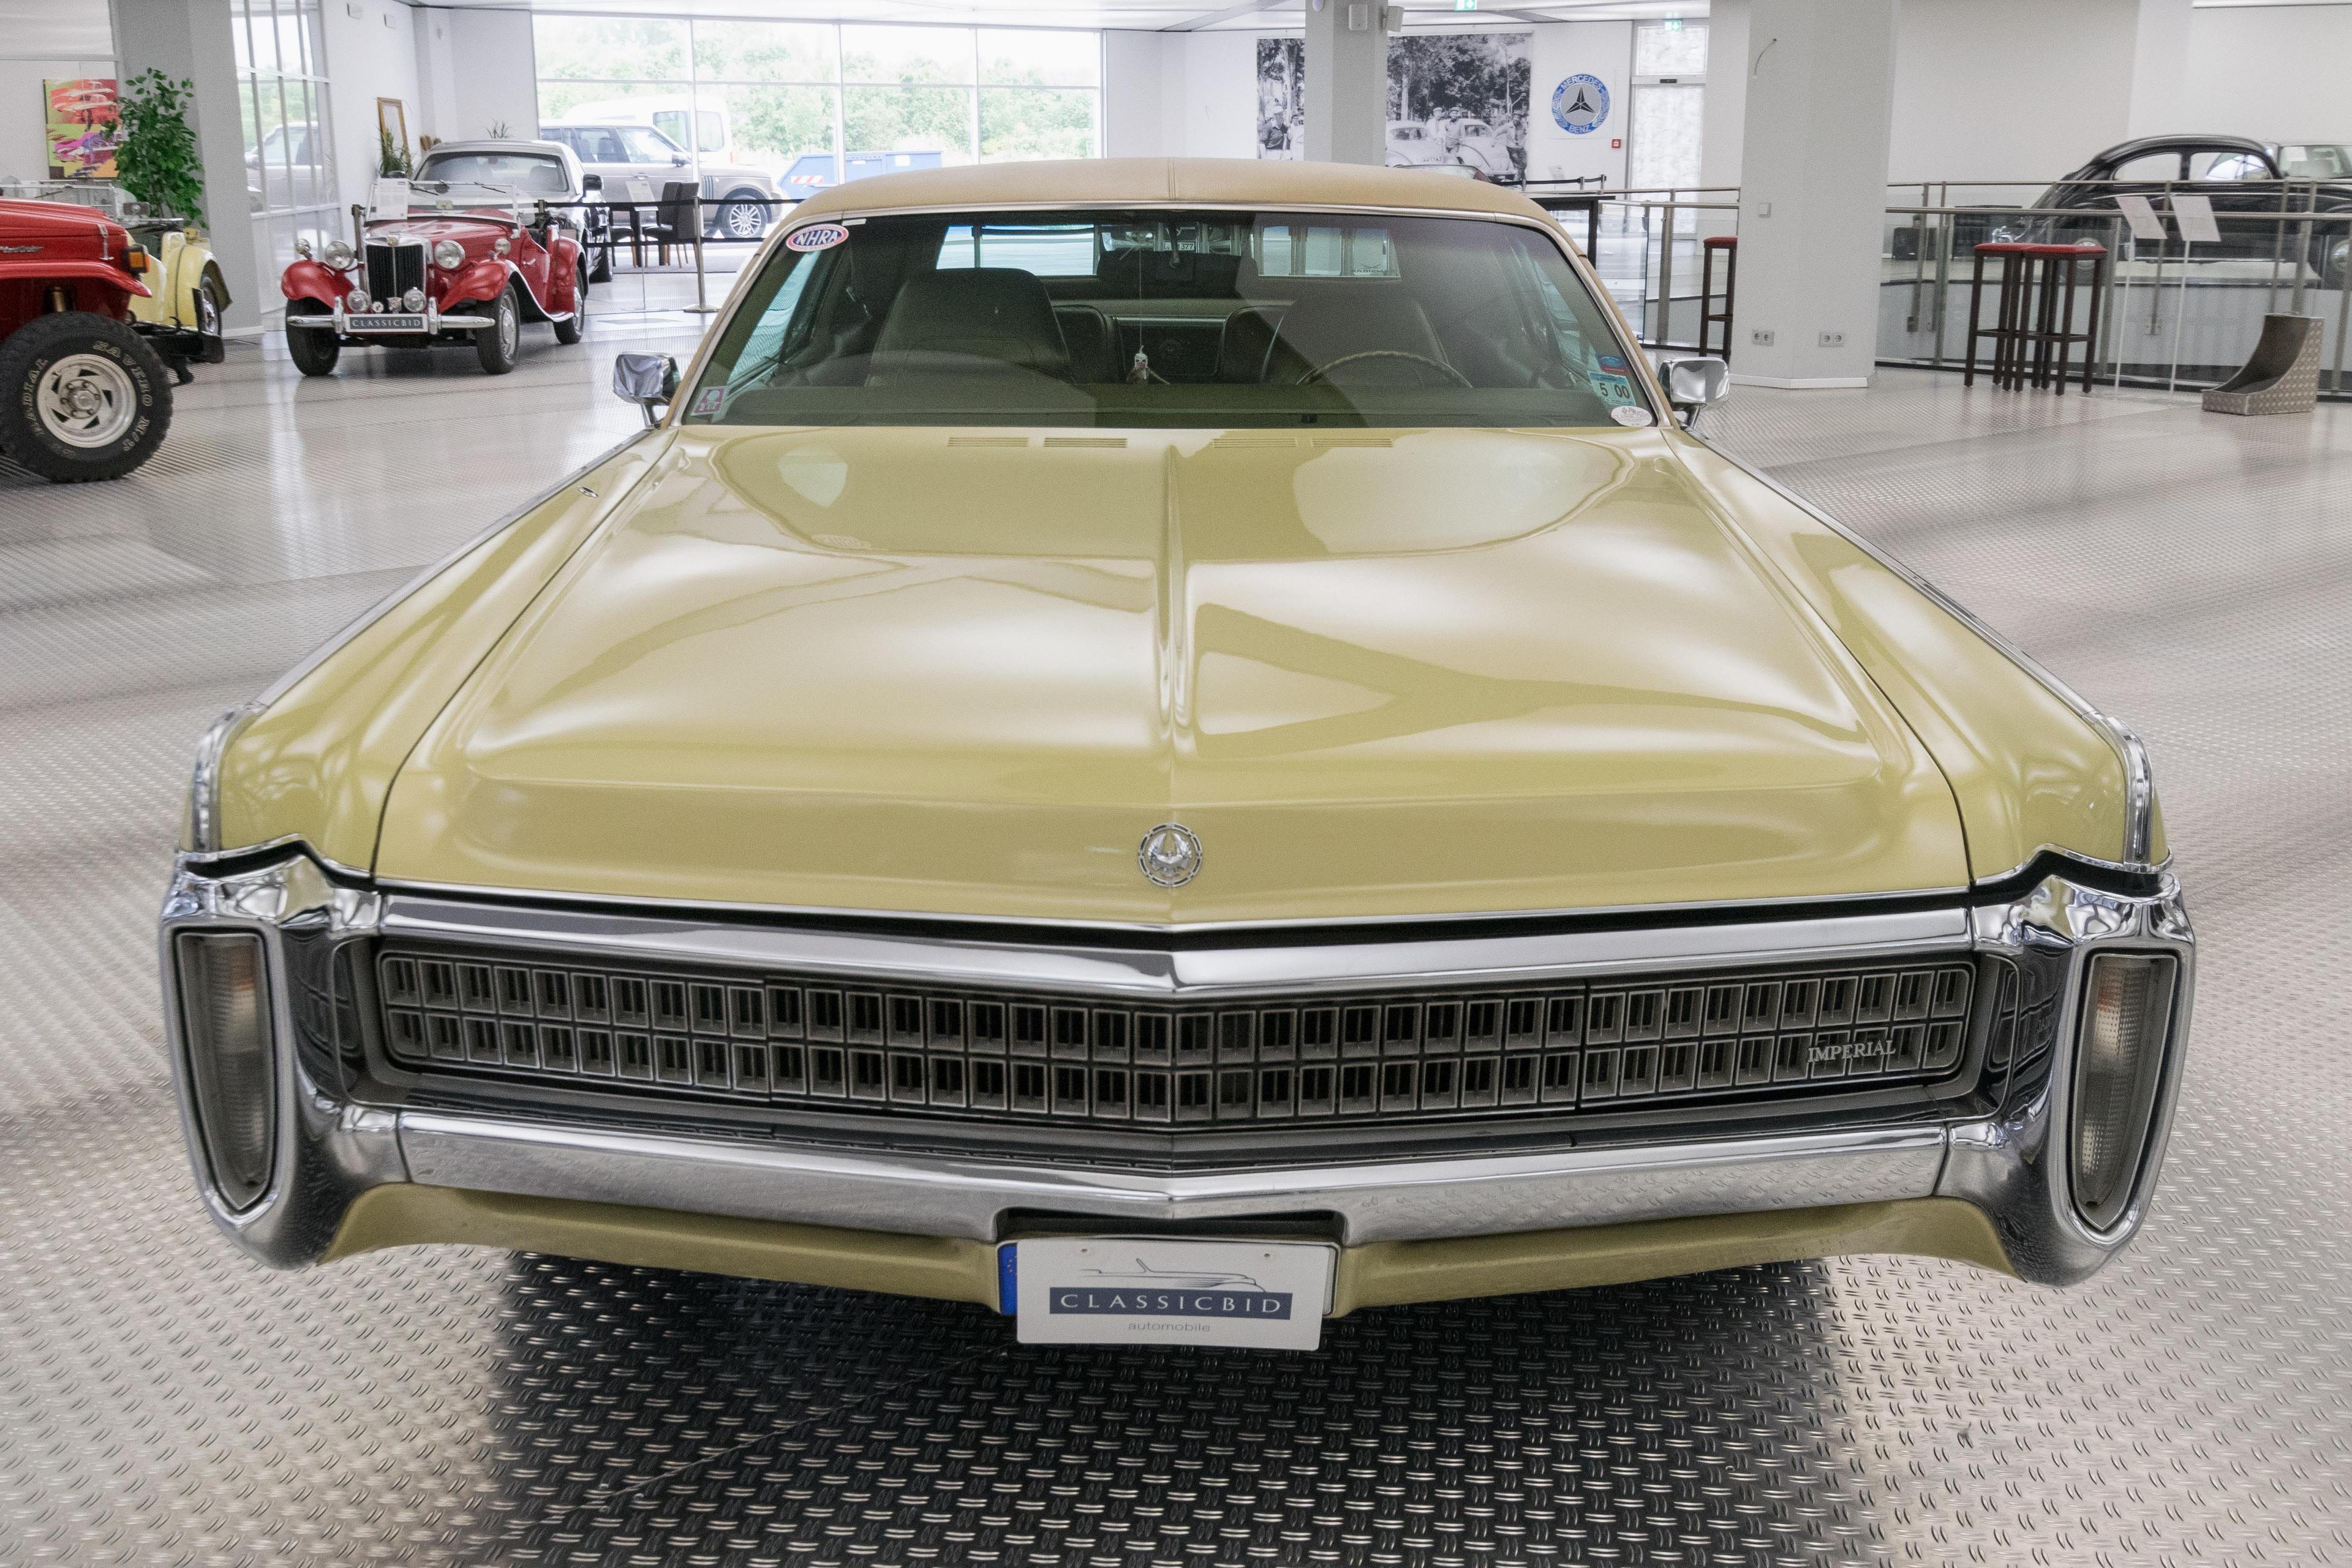 1972 Chrysler Imperial LeBaron